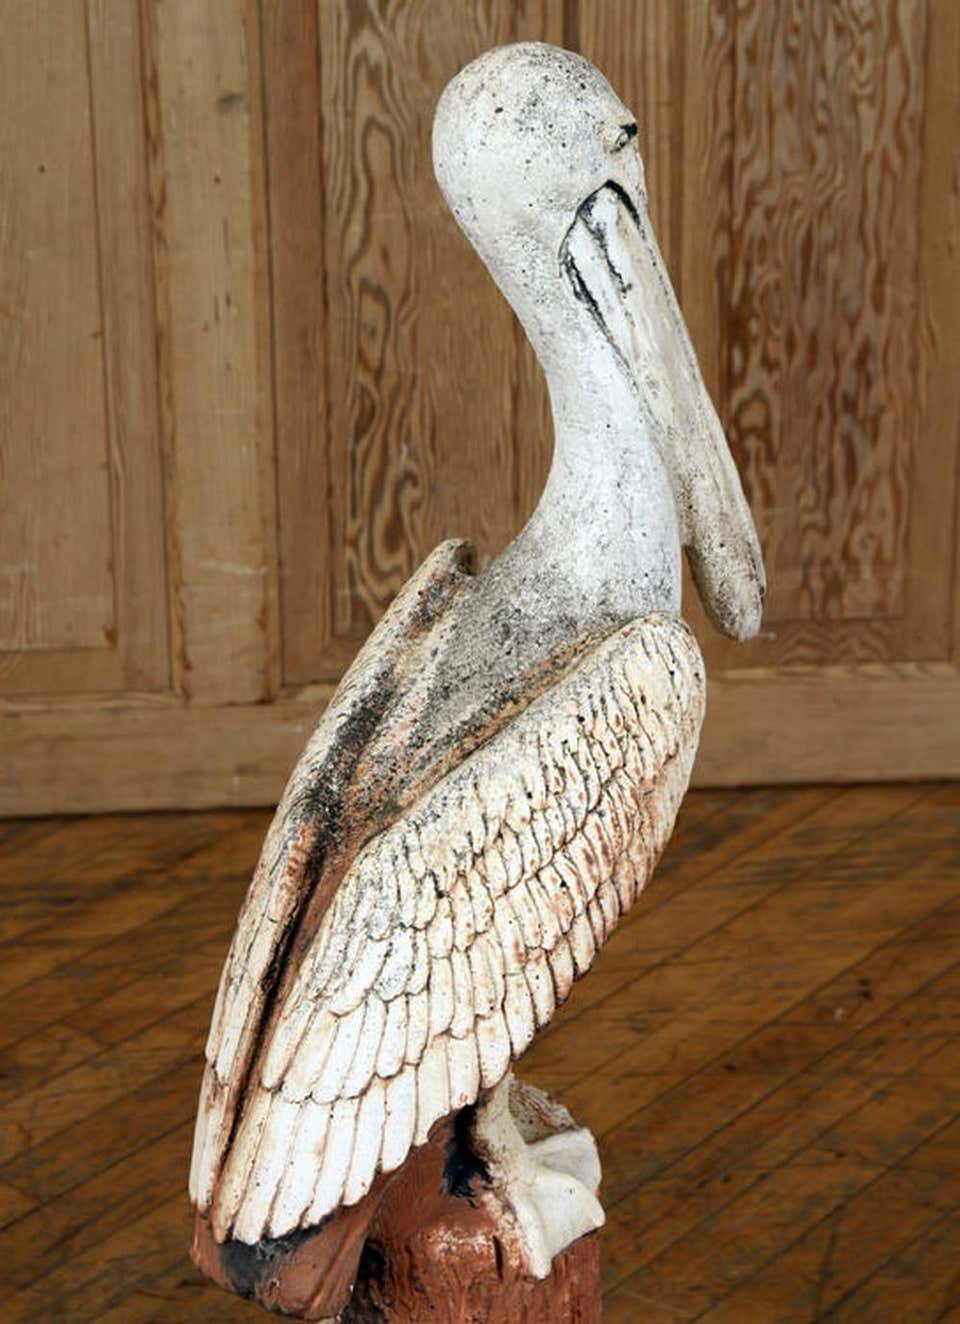 Pelican Stone Carving 4cm Soap Stone Small Animal Statue Figurine